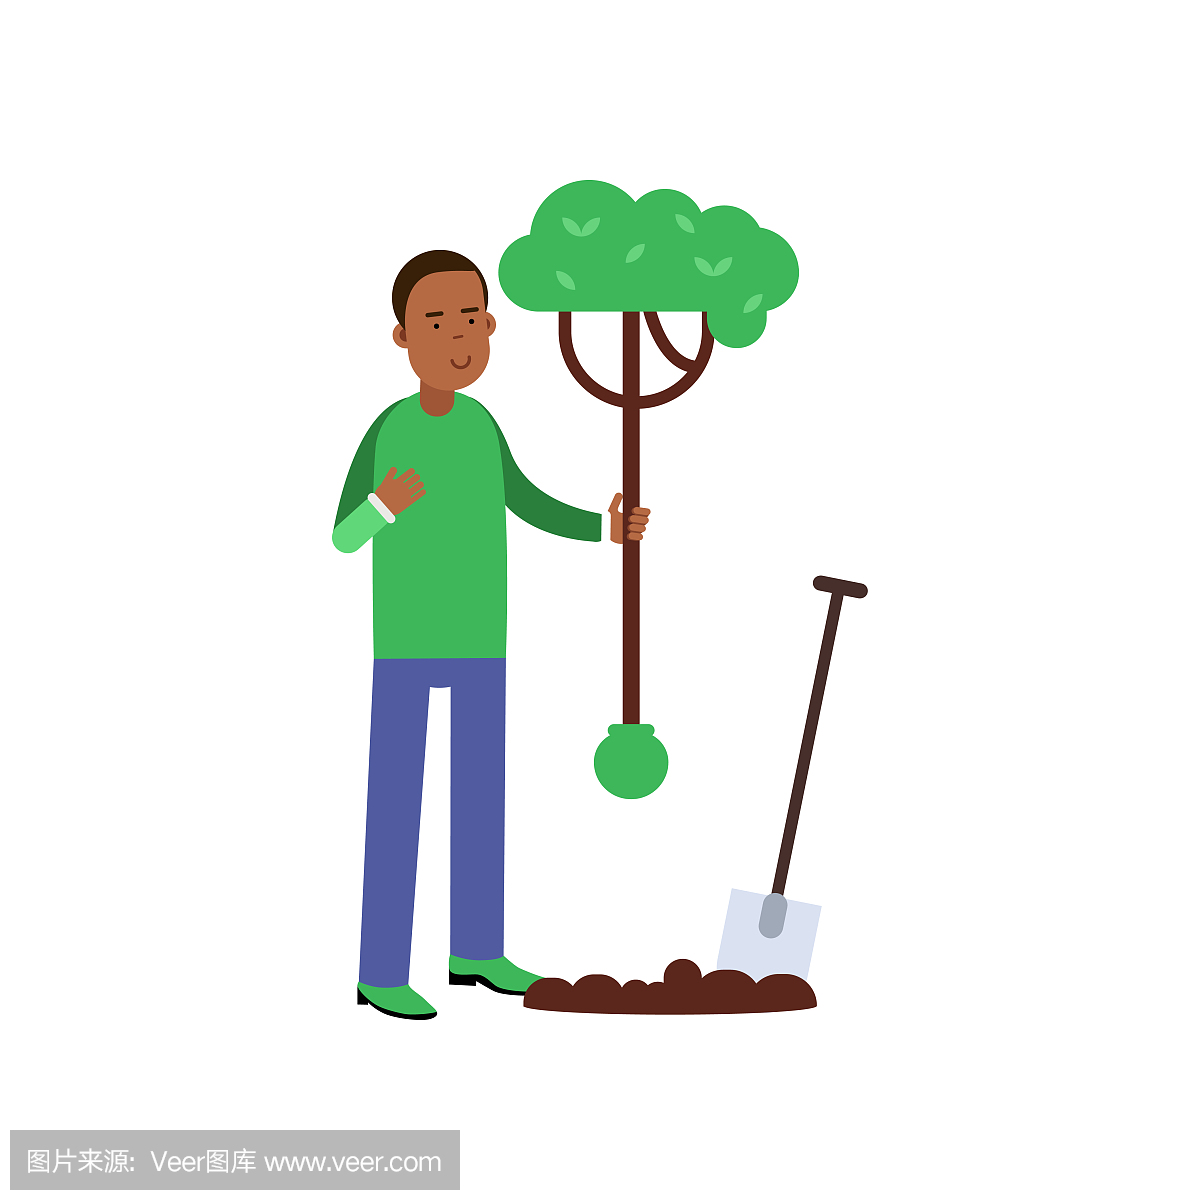 男人卡通人物种树,有助于环境保护